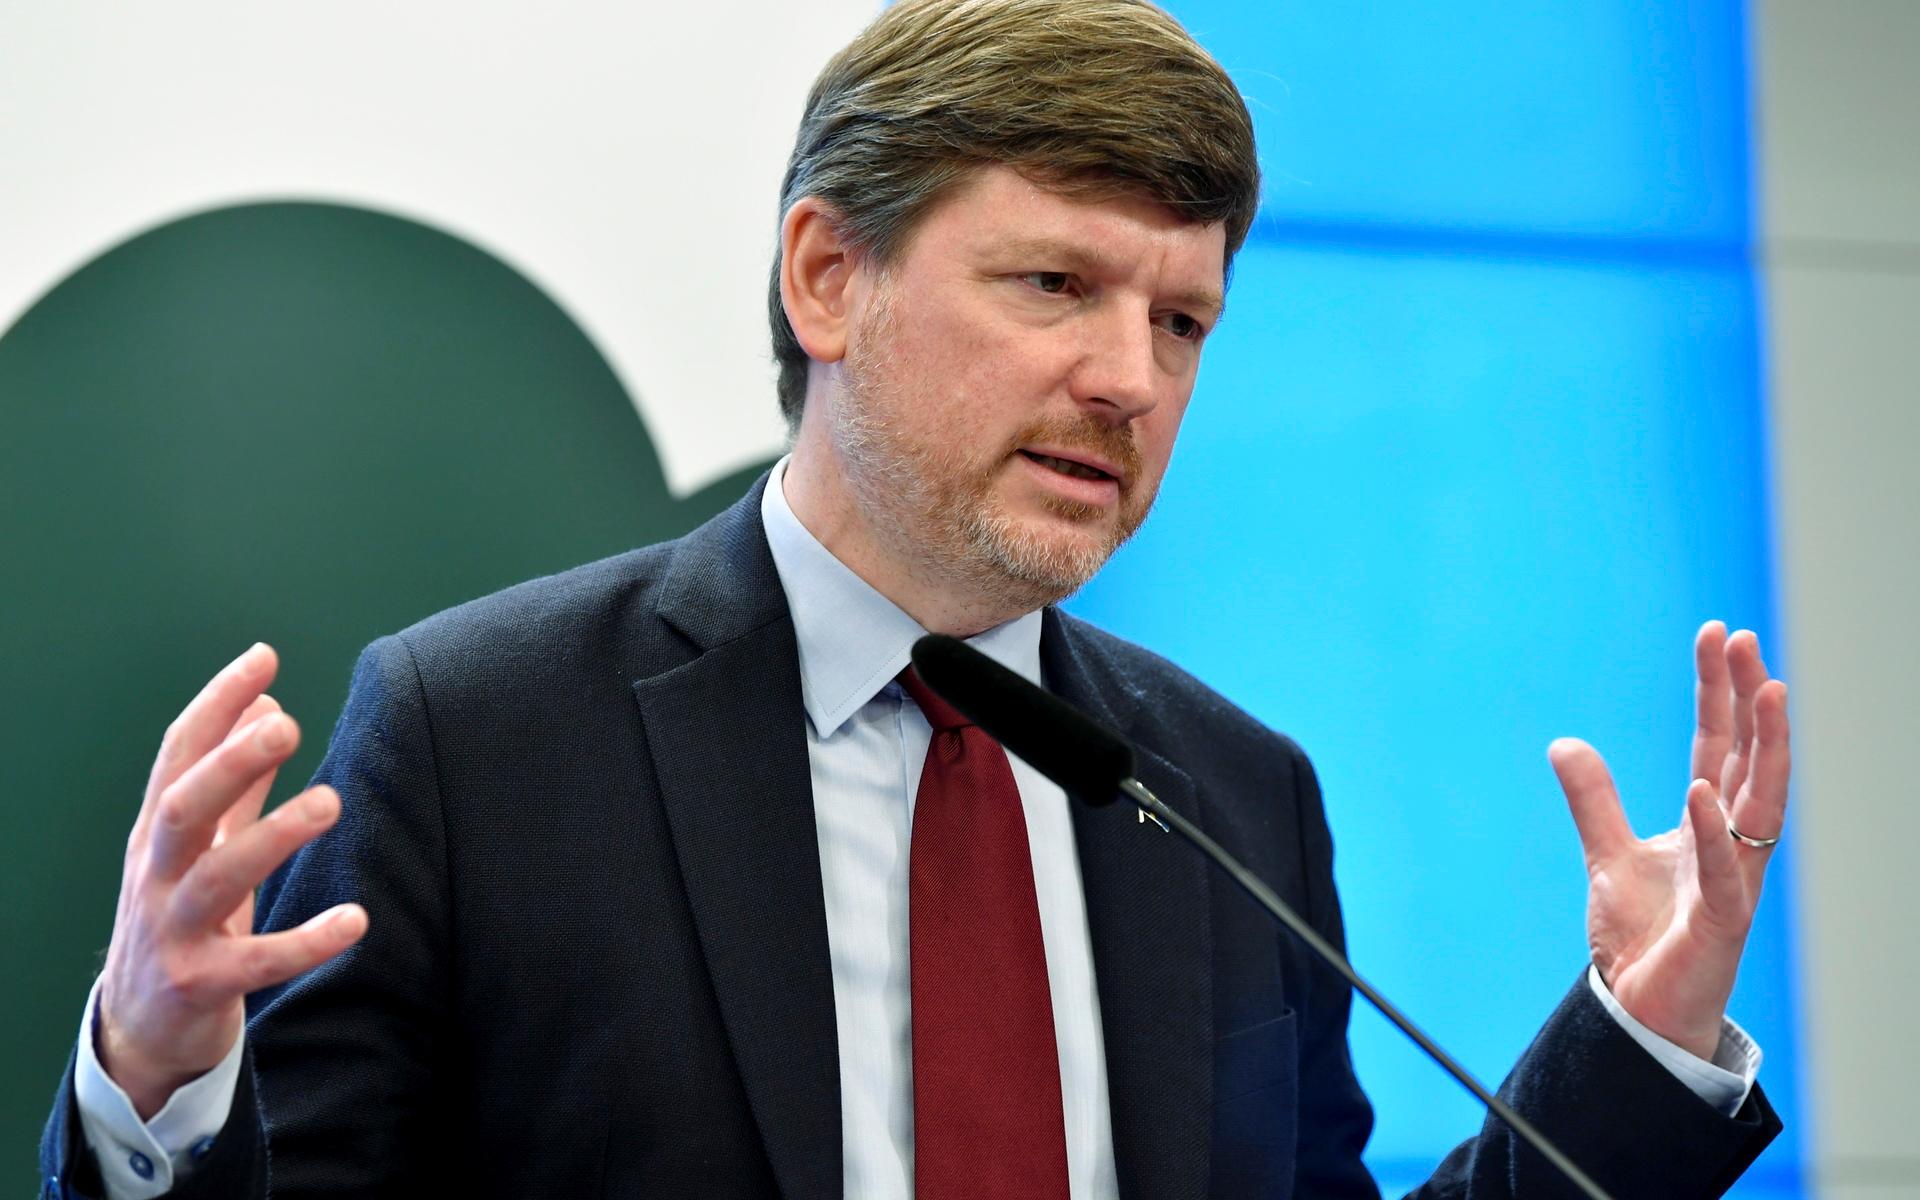 Centerpartiets ekonomisk-politiska talesperson Martin Ådahl säger att jordbruket drabbats enormt hård av höga priser på diesel och el, men kanske ännu mer av ökande kostnader för gödsel och sojafoder.